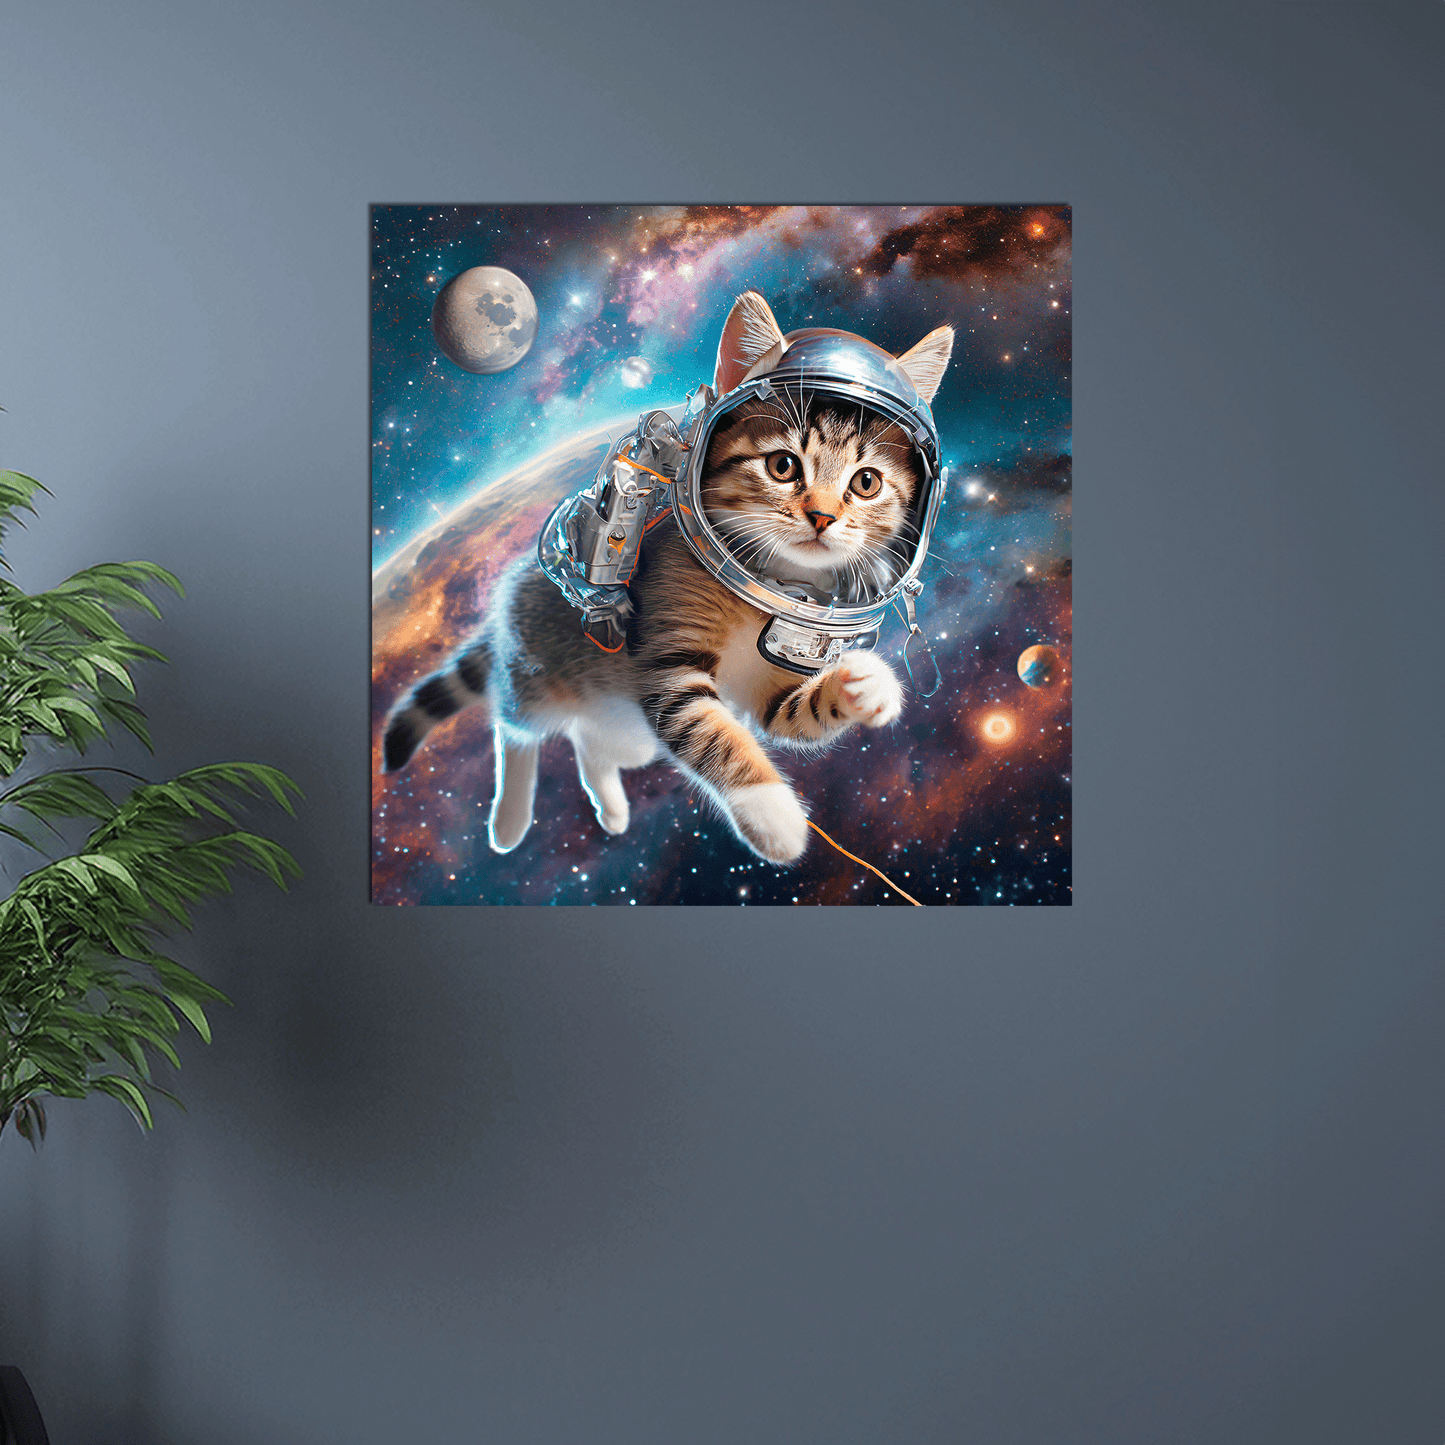 Space Kitty Chasing Cosmic String - Metal Poster - Premium Metal Print